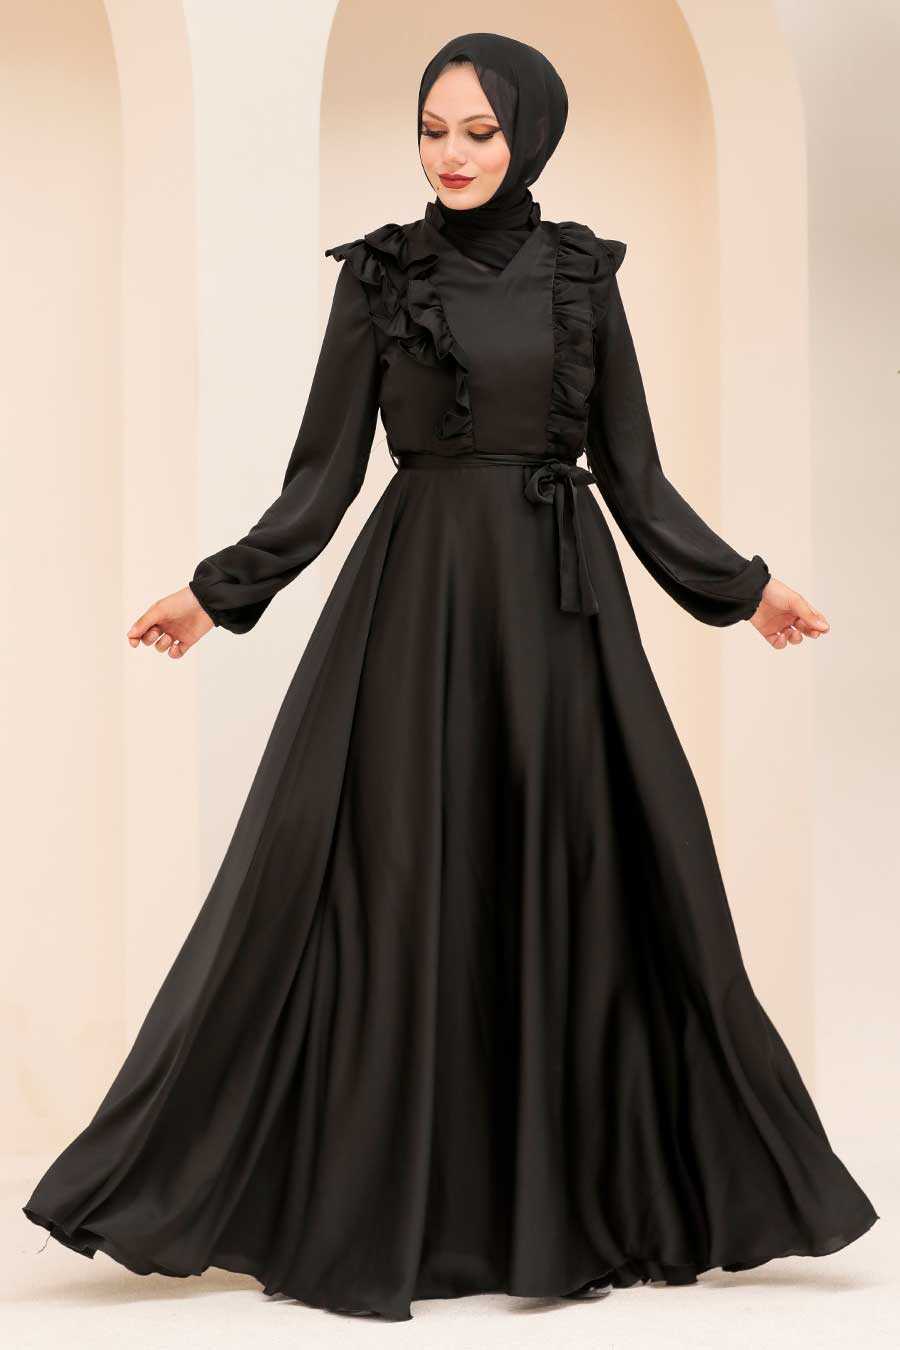 Neva Style - Satin Black Modest Islamic Clothing Wedding Dress 3117S